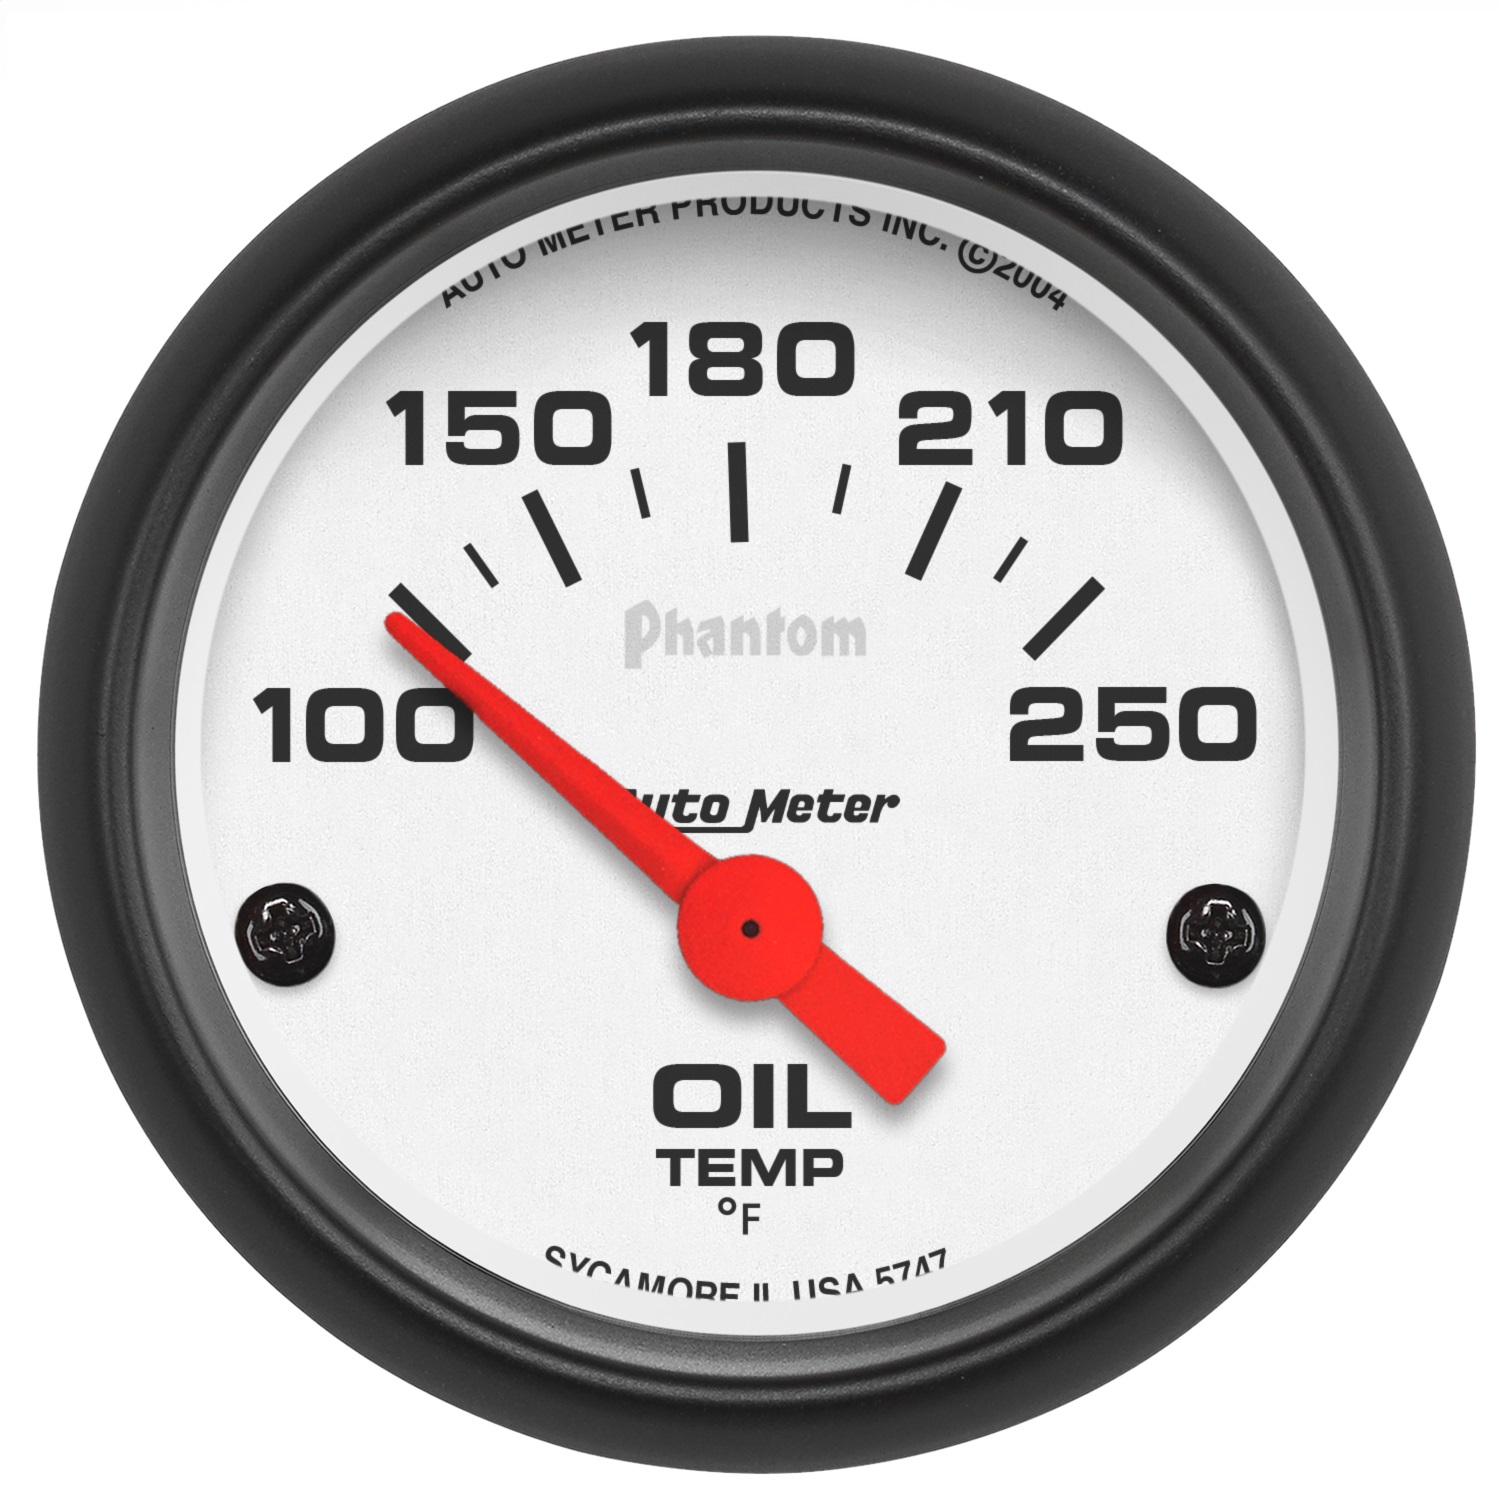 Auto Meter Auto Meter 5747 Phantom; Electric Oil Temperature Gauge